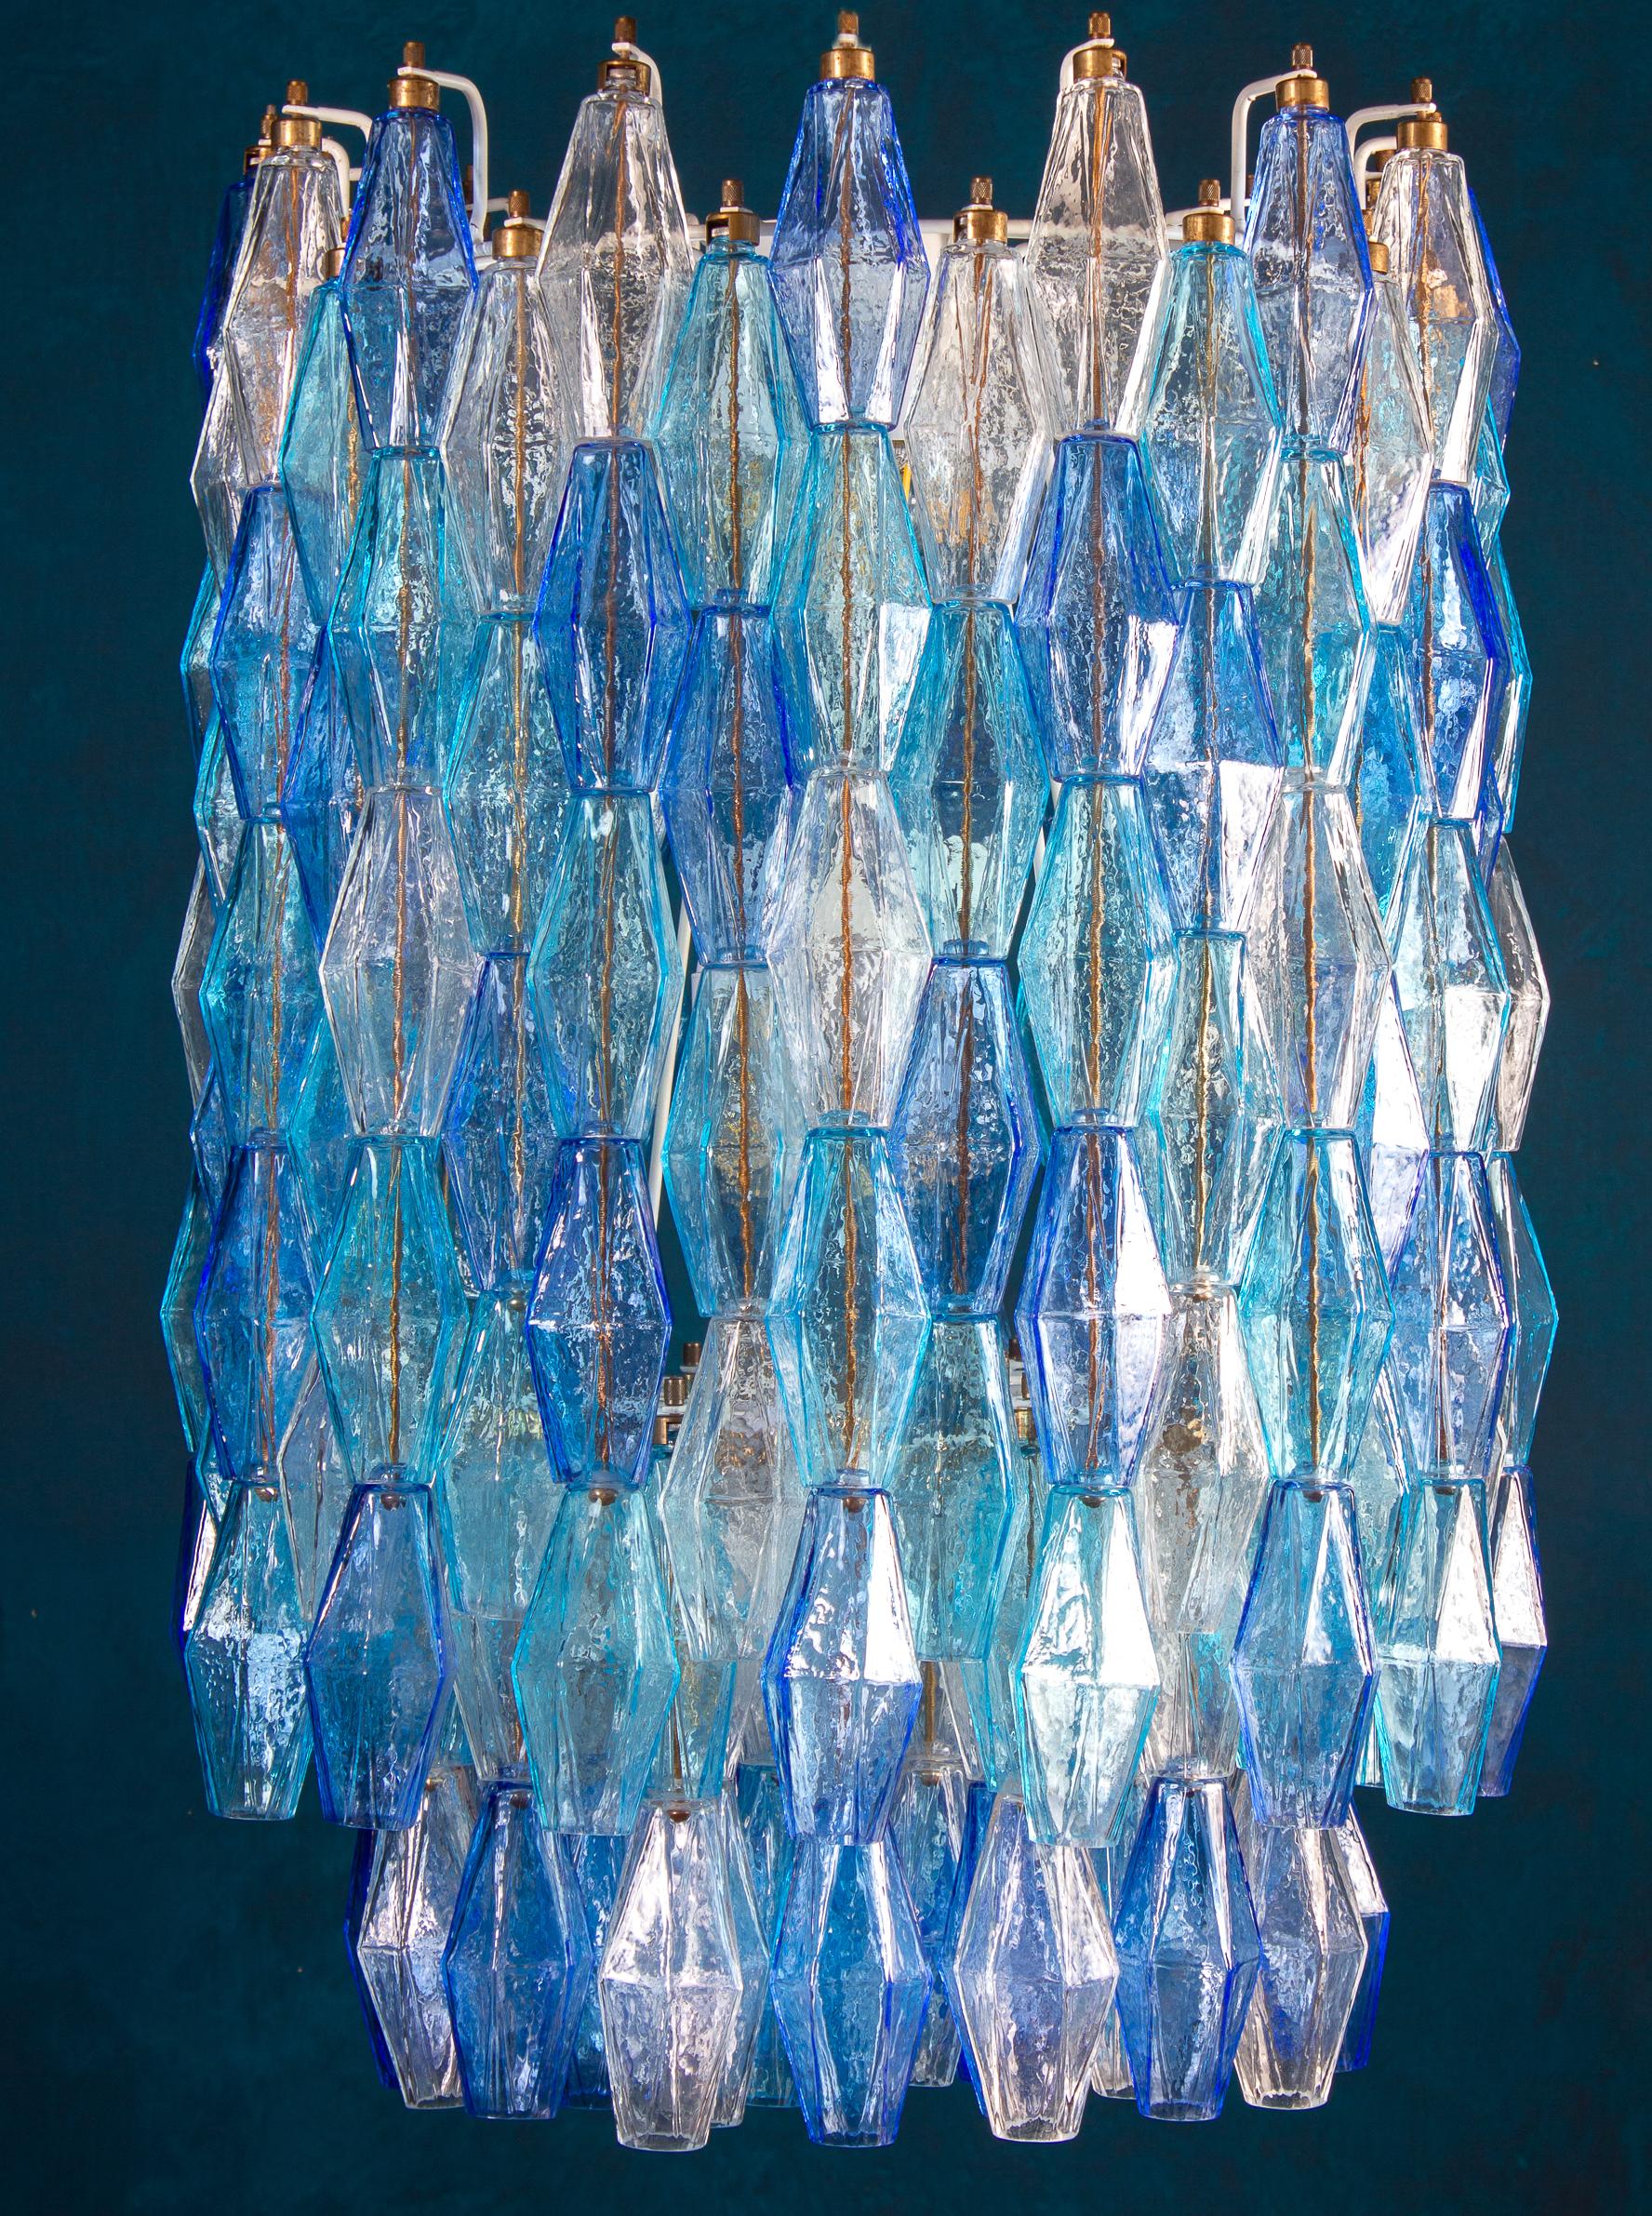 Dieses fantastische Paar Kronleuchter besteht aus ca. 200 farbigem Poliedri-Glas aus Murano.
Sapphire Farbvariante mit himmlischen und Aquamarin kostbare Poliedri.
Maße: Höhe ohne Kette und Baldachin 88 cm (35inches). Mit Kette und Baldachin cm